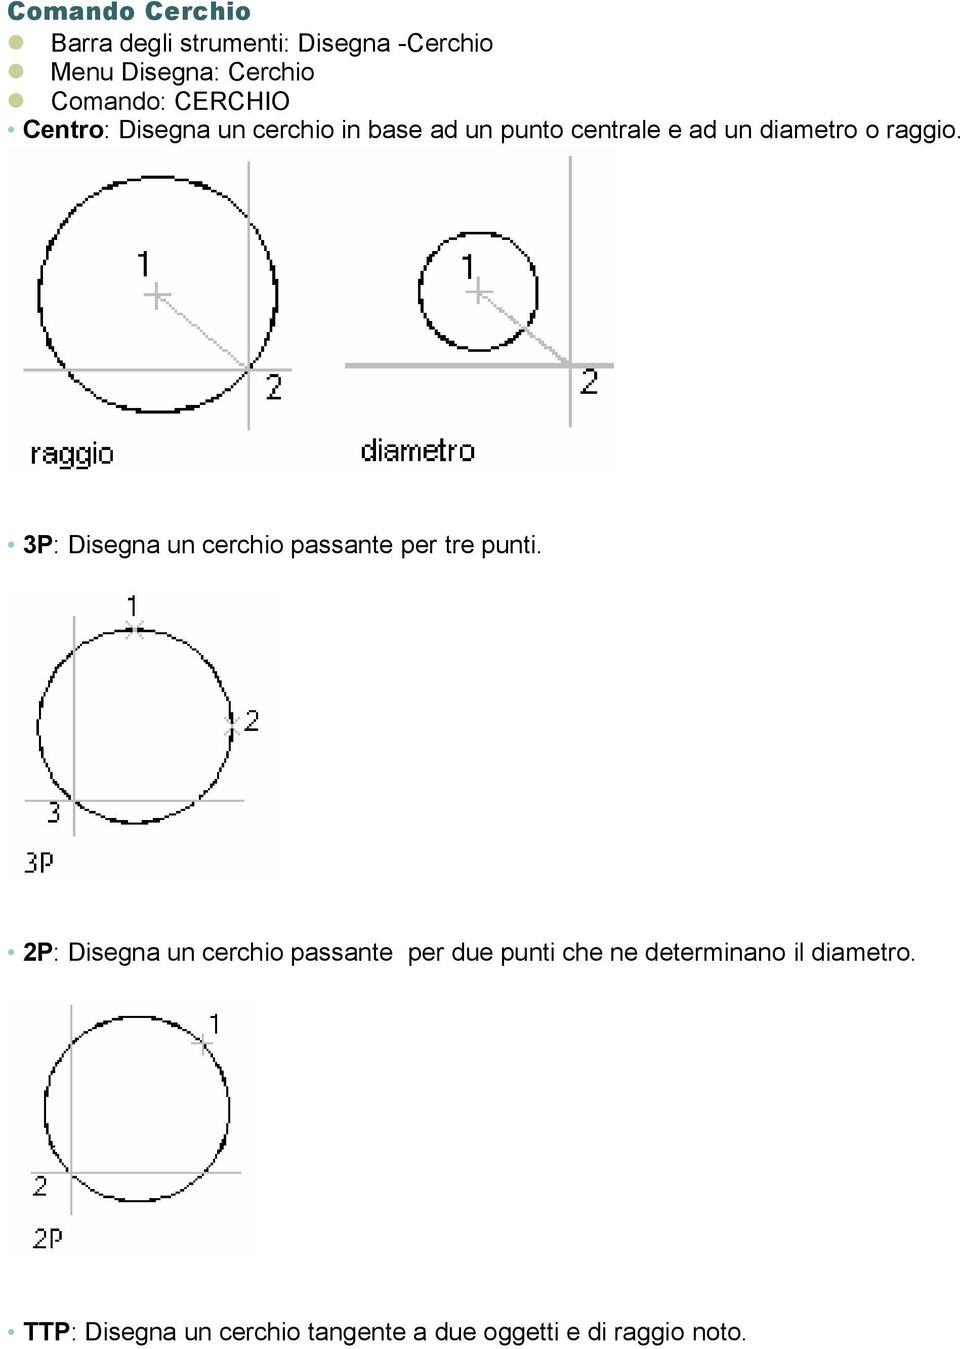 3P: Disegna un cerchio passante per tre punti.